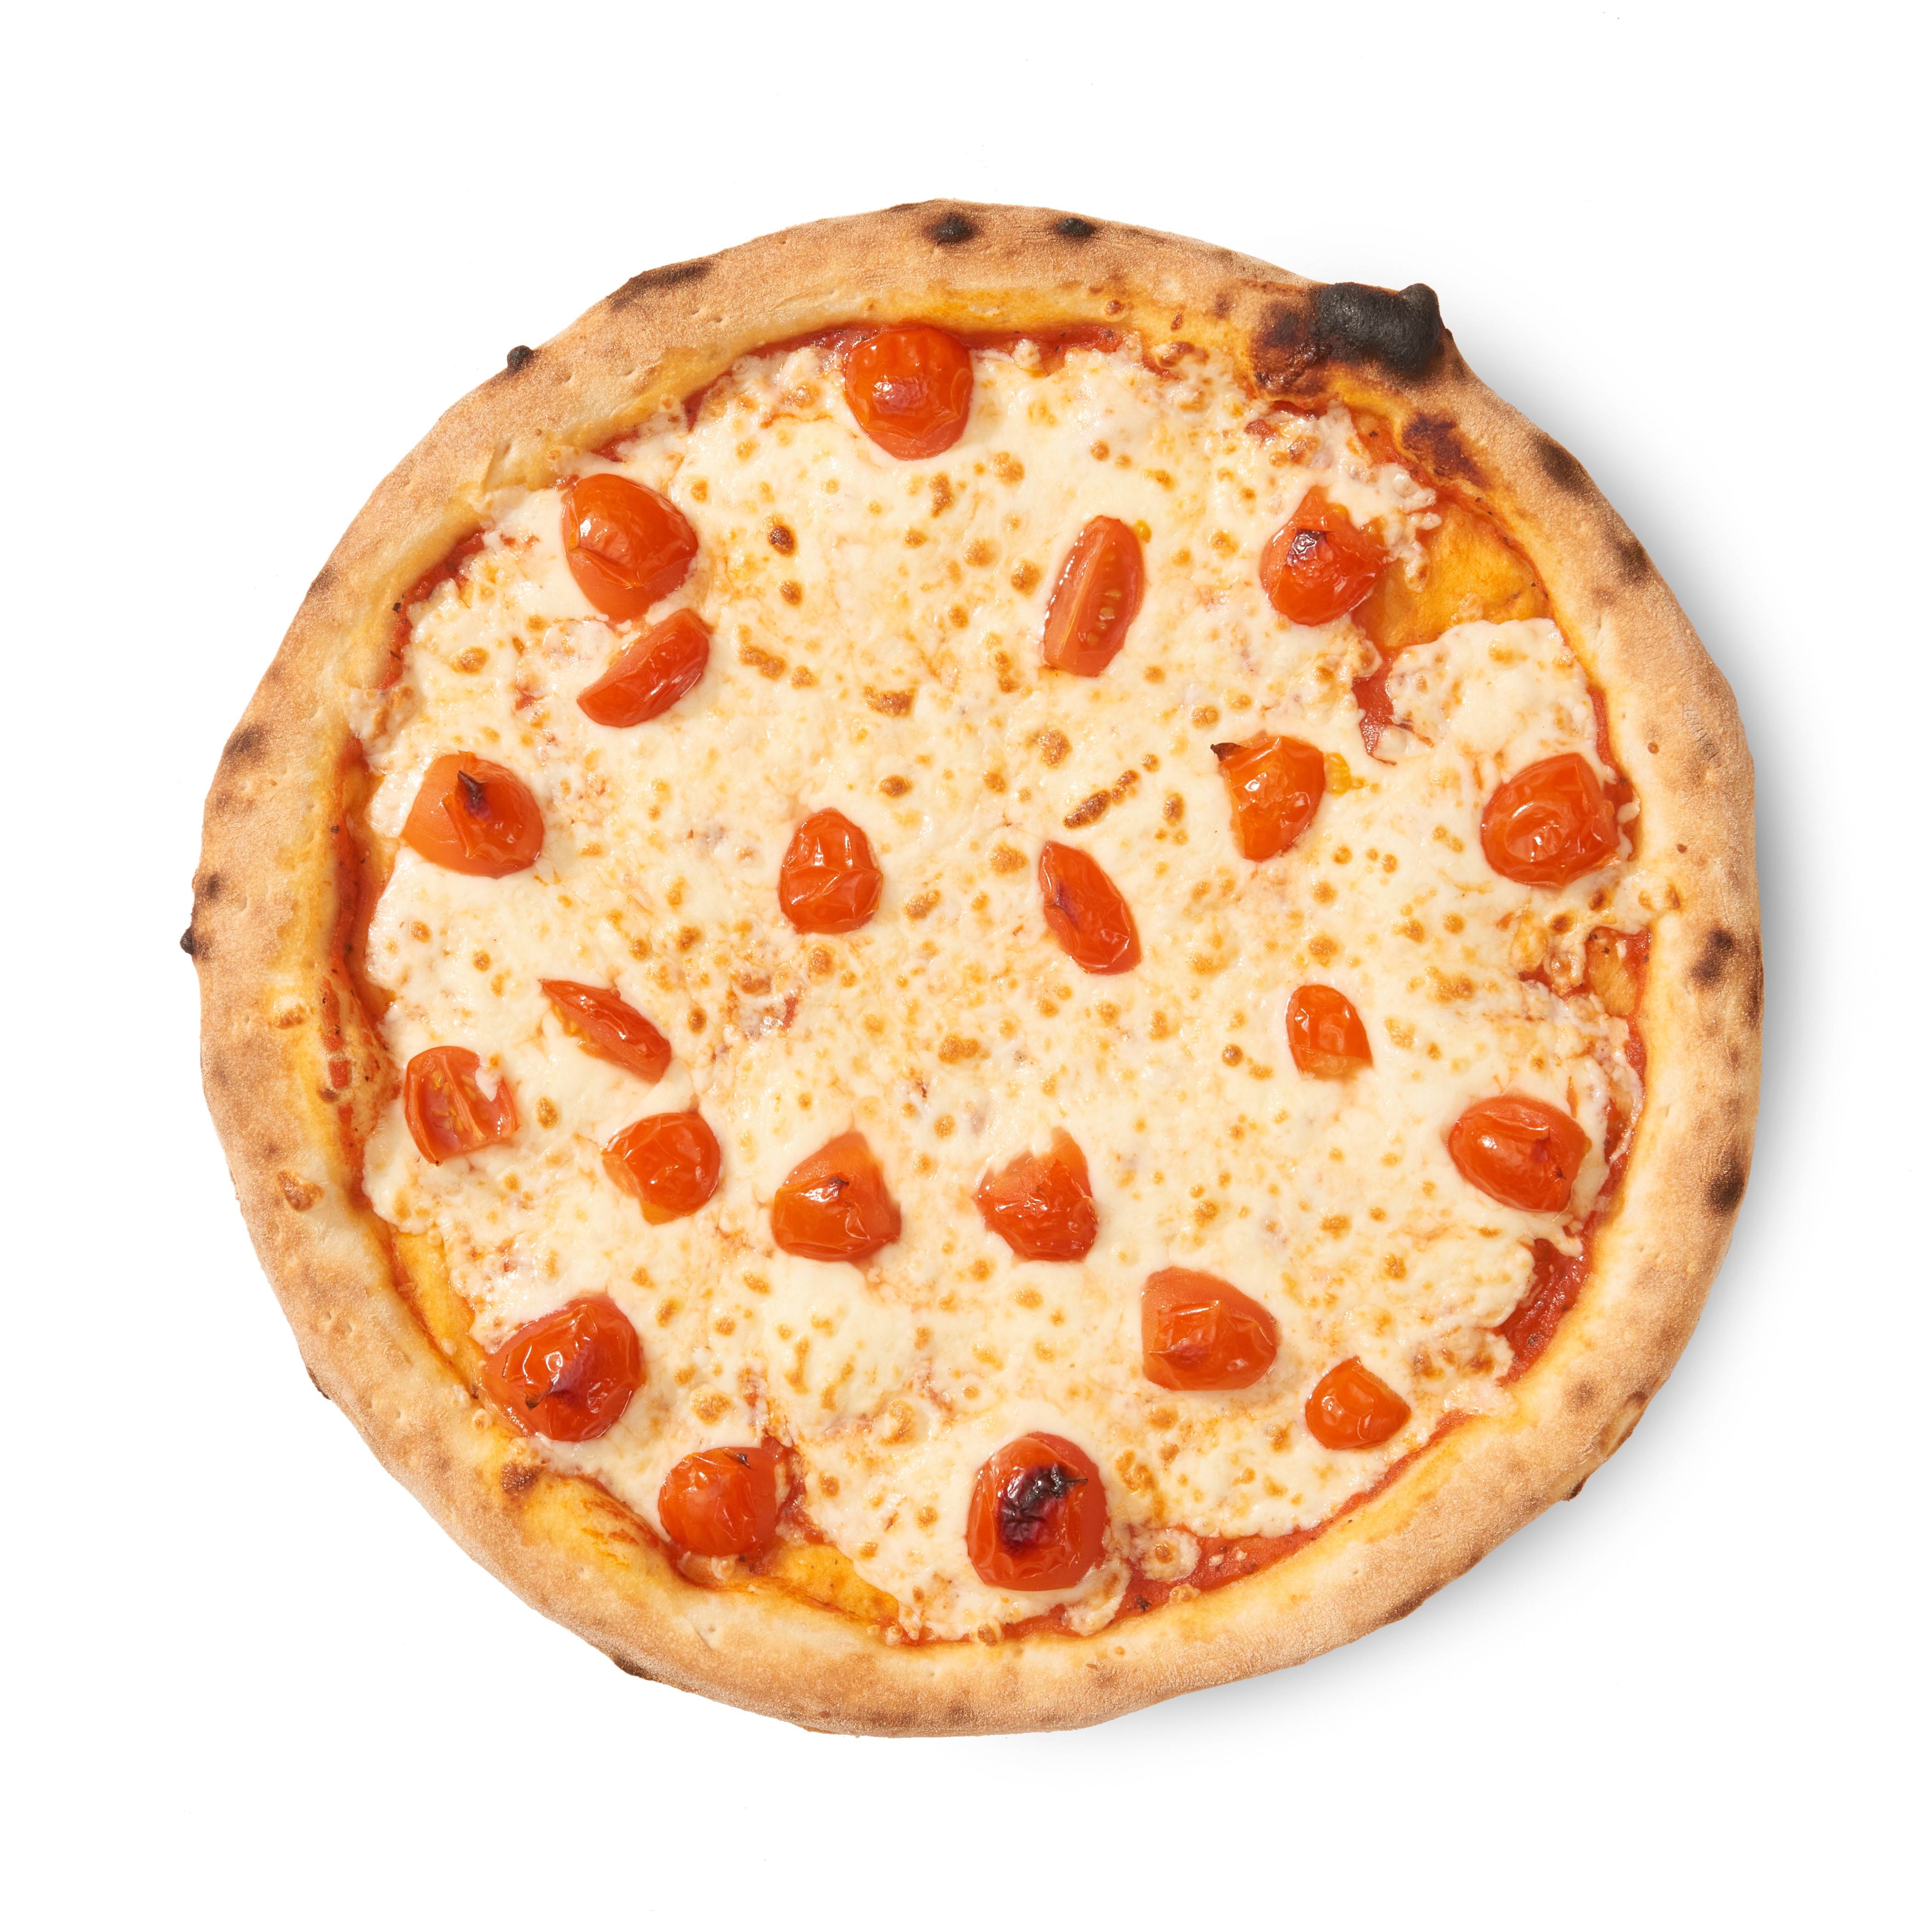 тесто для пиццы маргарита тонкое и мягкое как в пиццерии фото 65